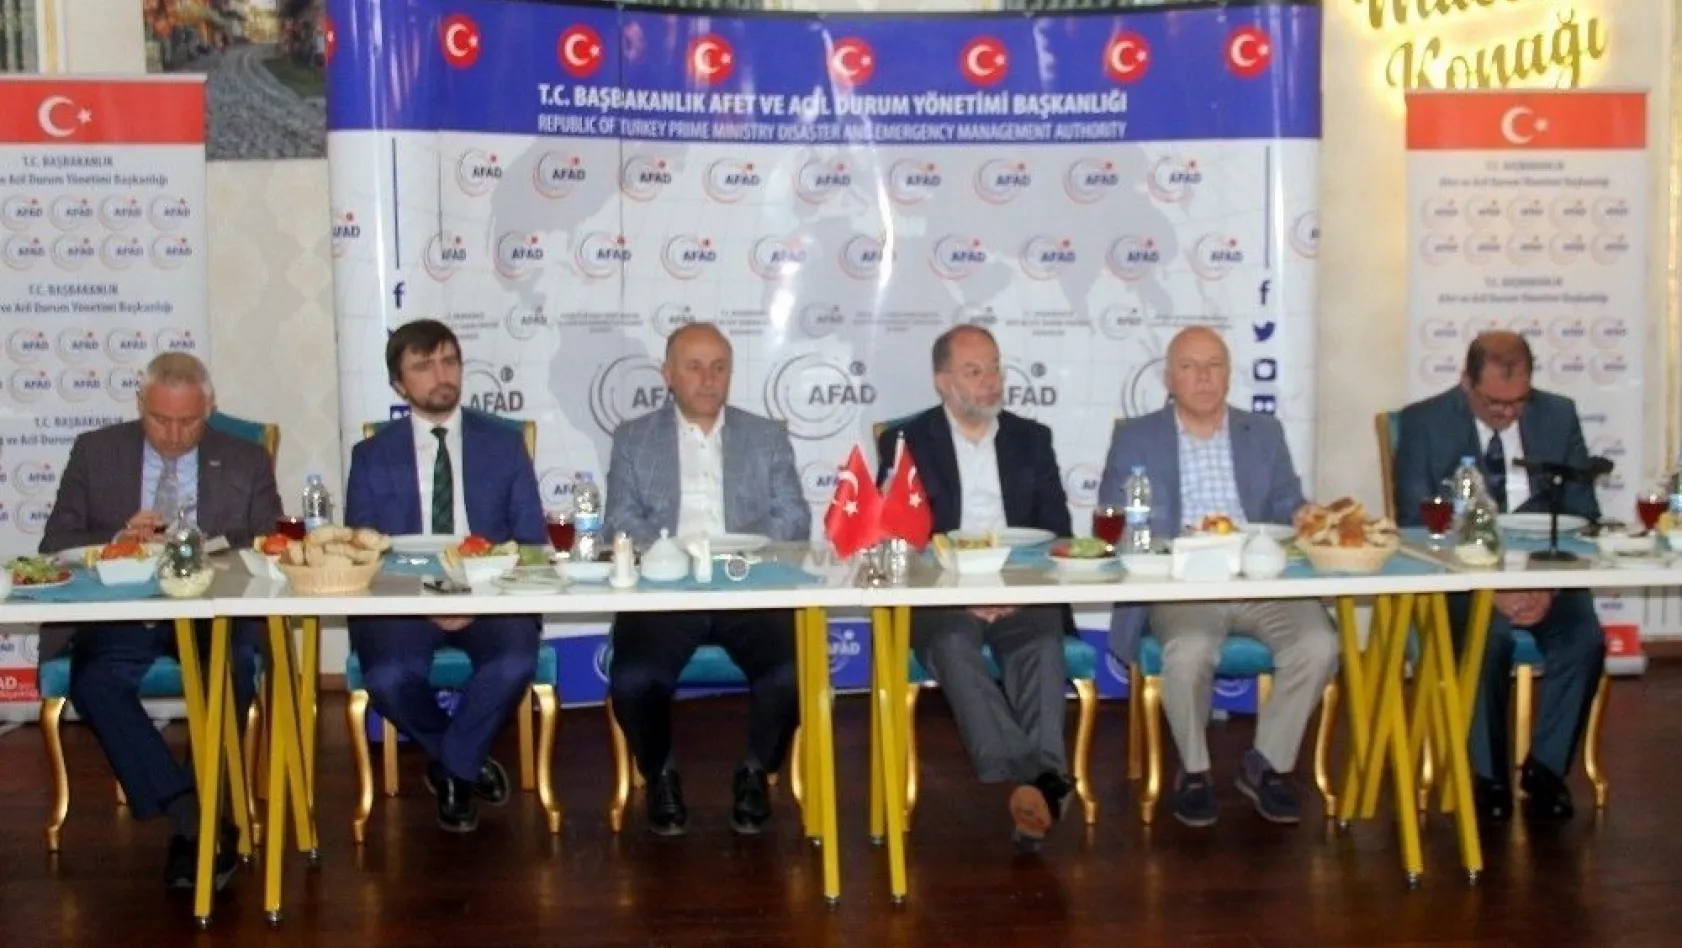 Başbakan Yardımcısı Akdağ, AFAD müdürleriyle bir araya geldi
